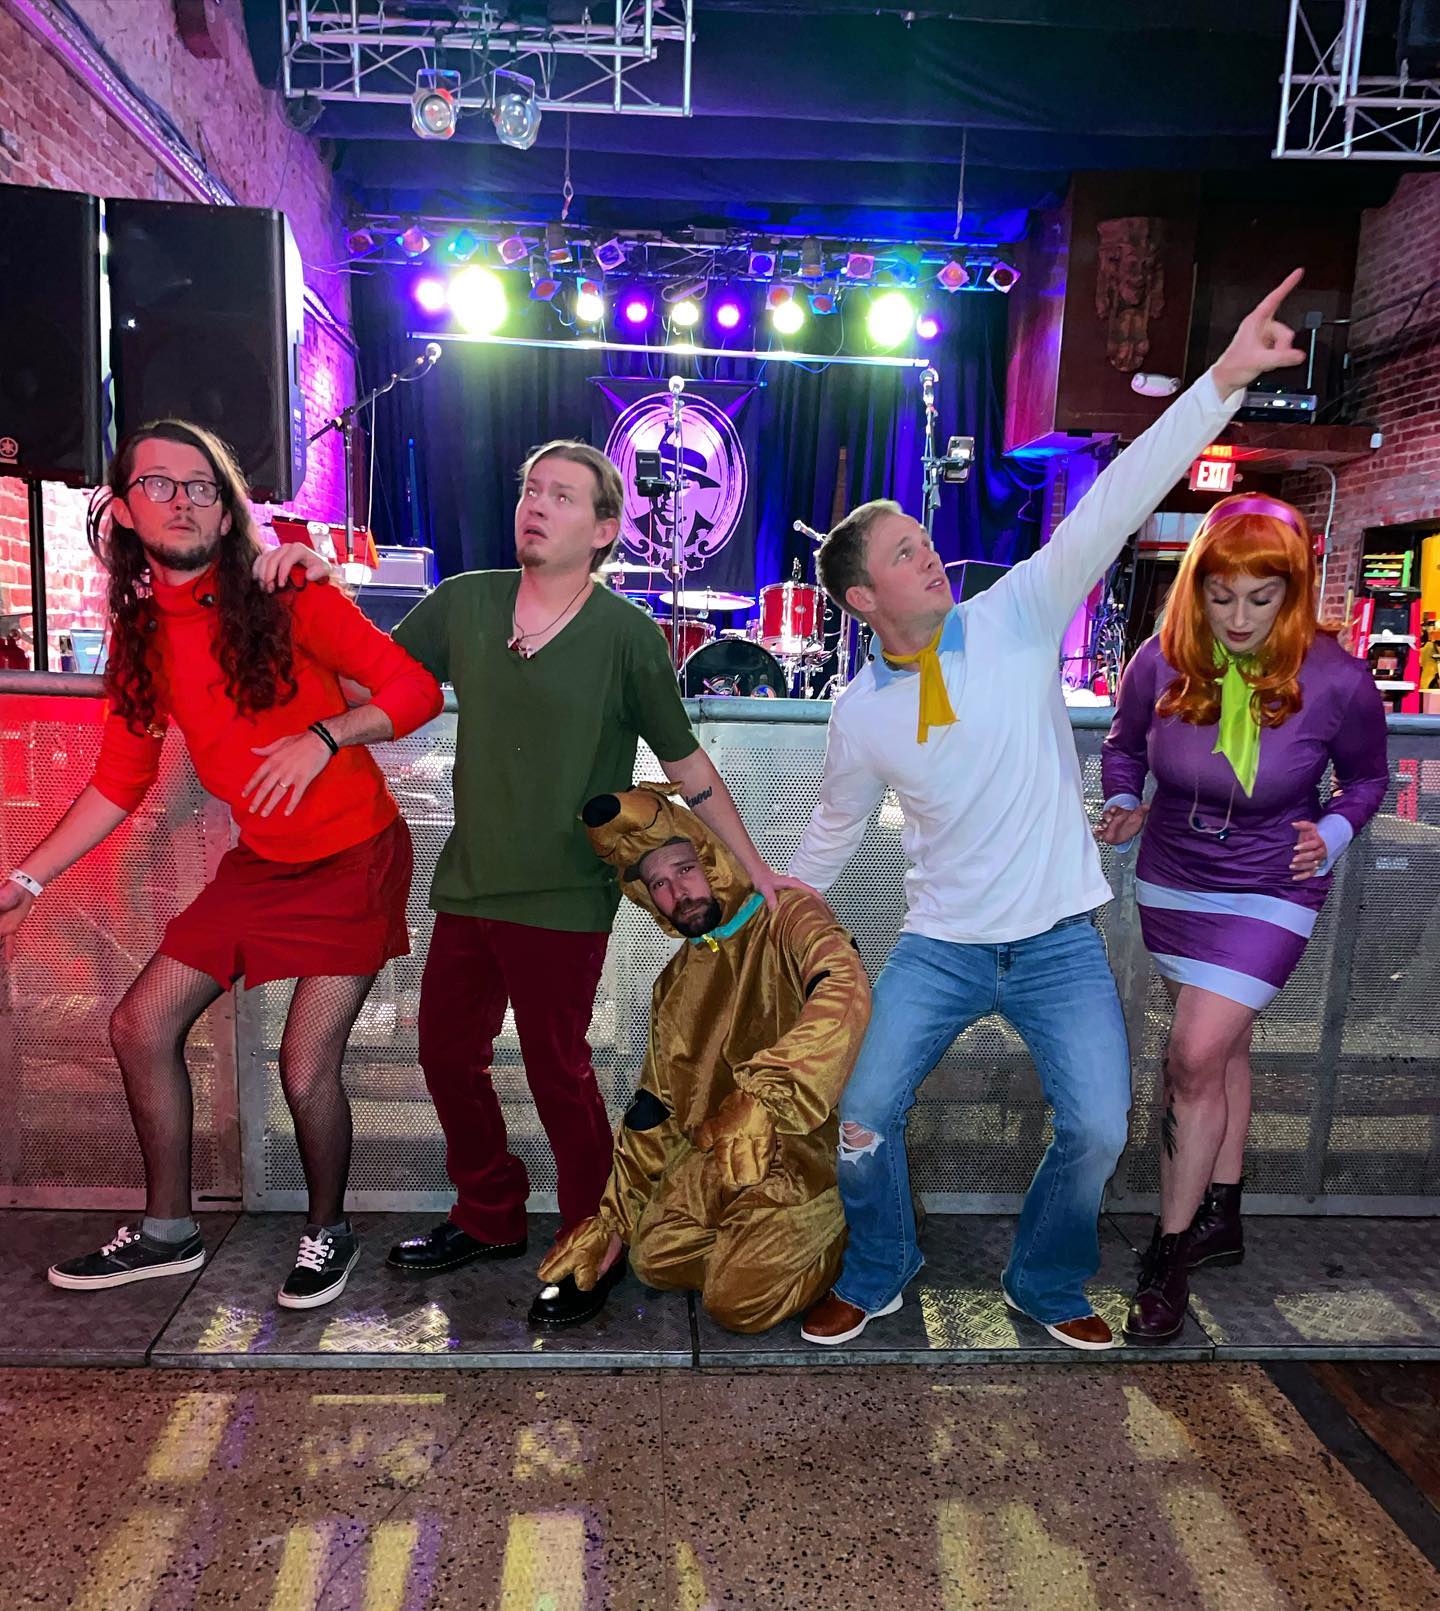 Joey's Van band dressed as members of Scooby Doo's group